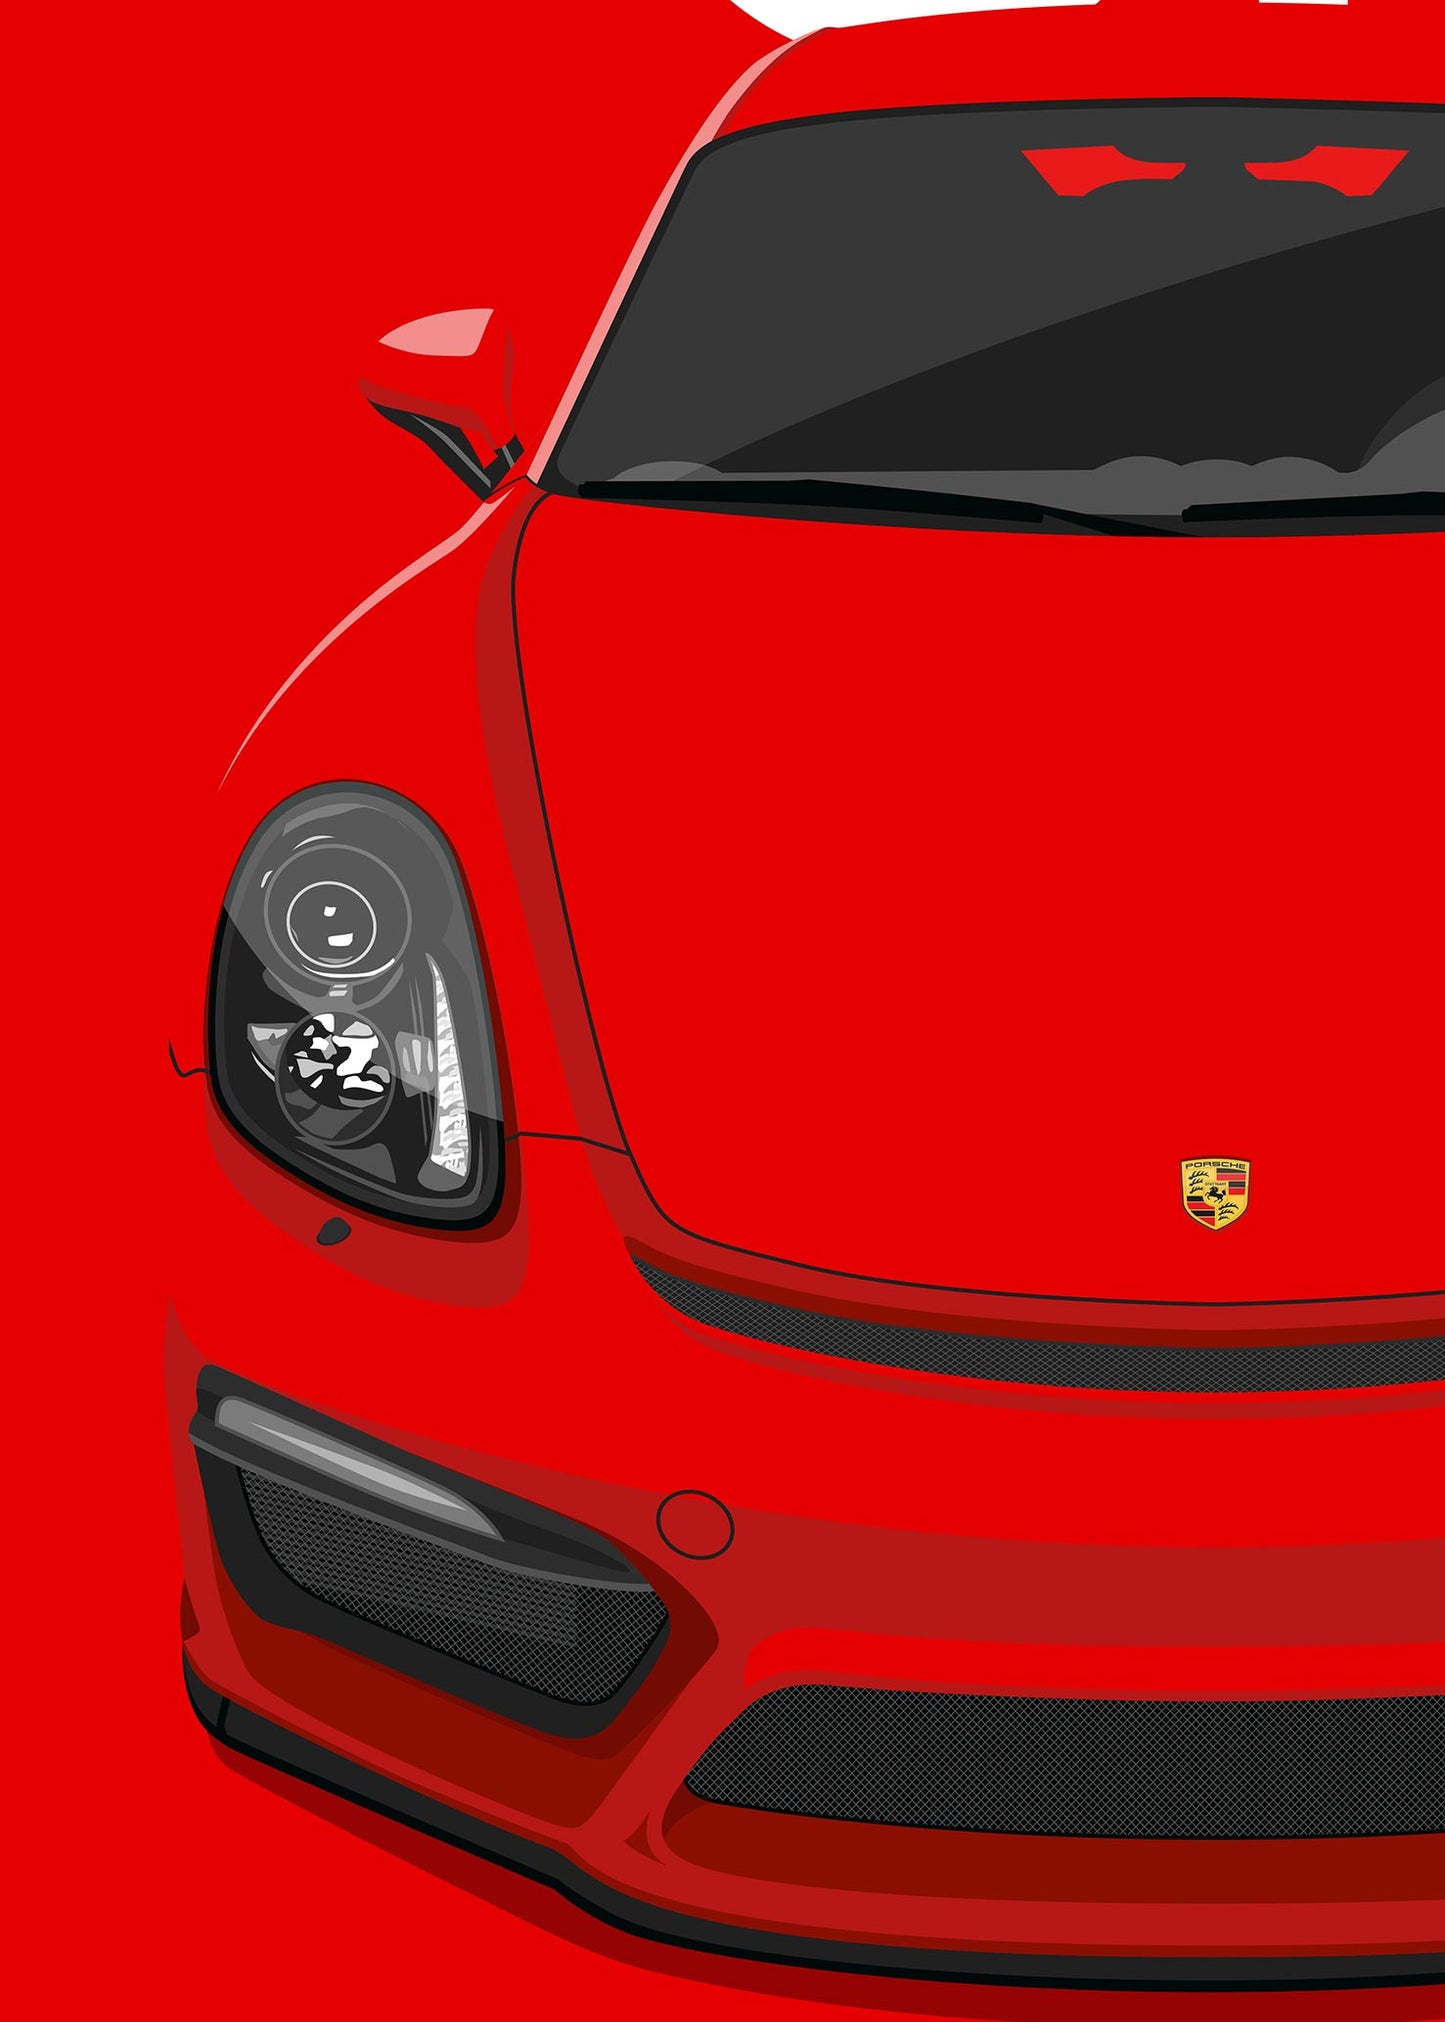 2015 Porsche Cayman (981) GT4 - Guards Red - poster print